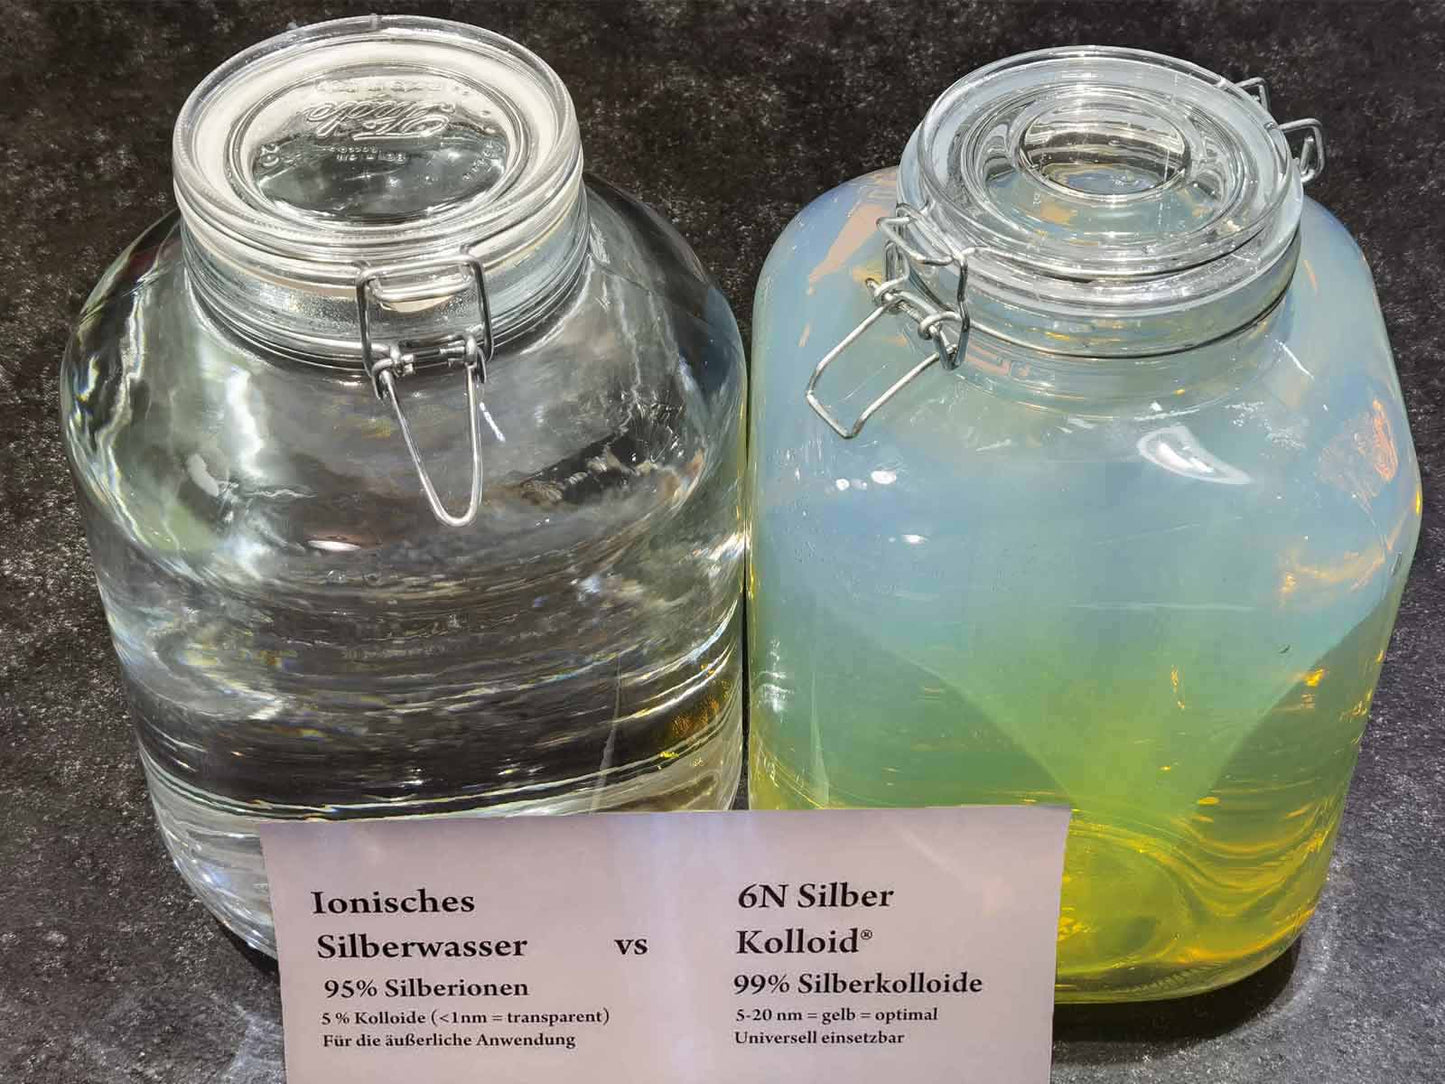 6N Silber® ionisches Silberwasser